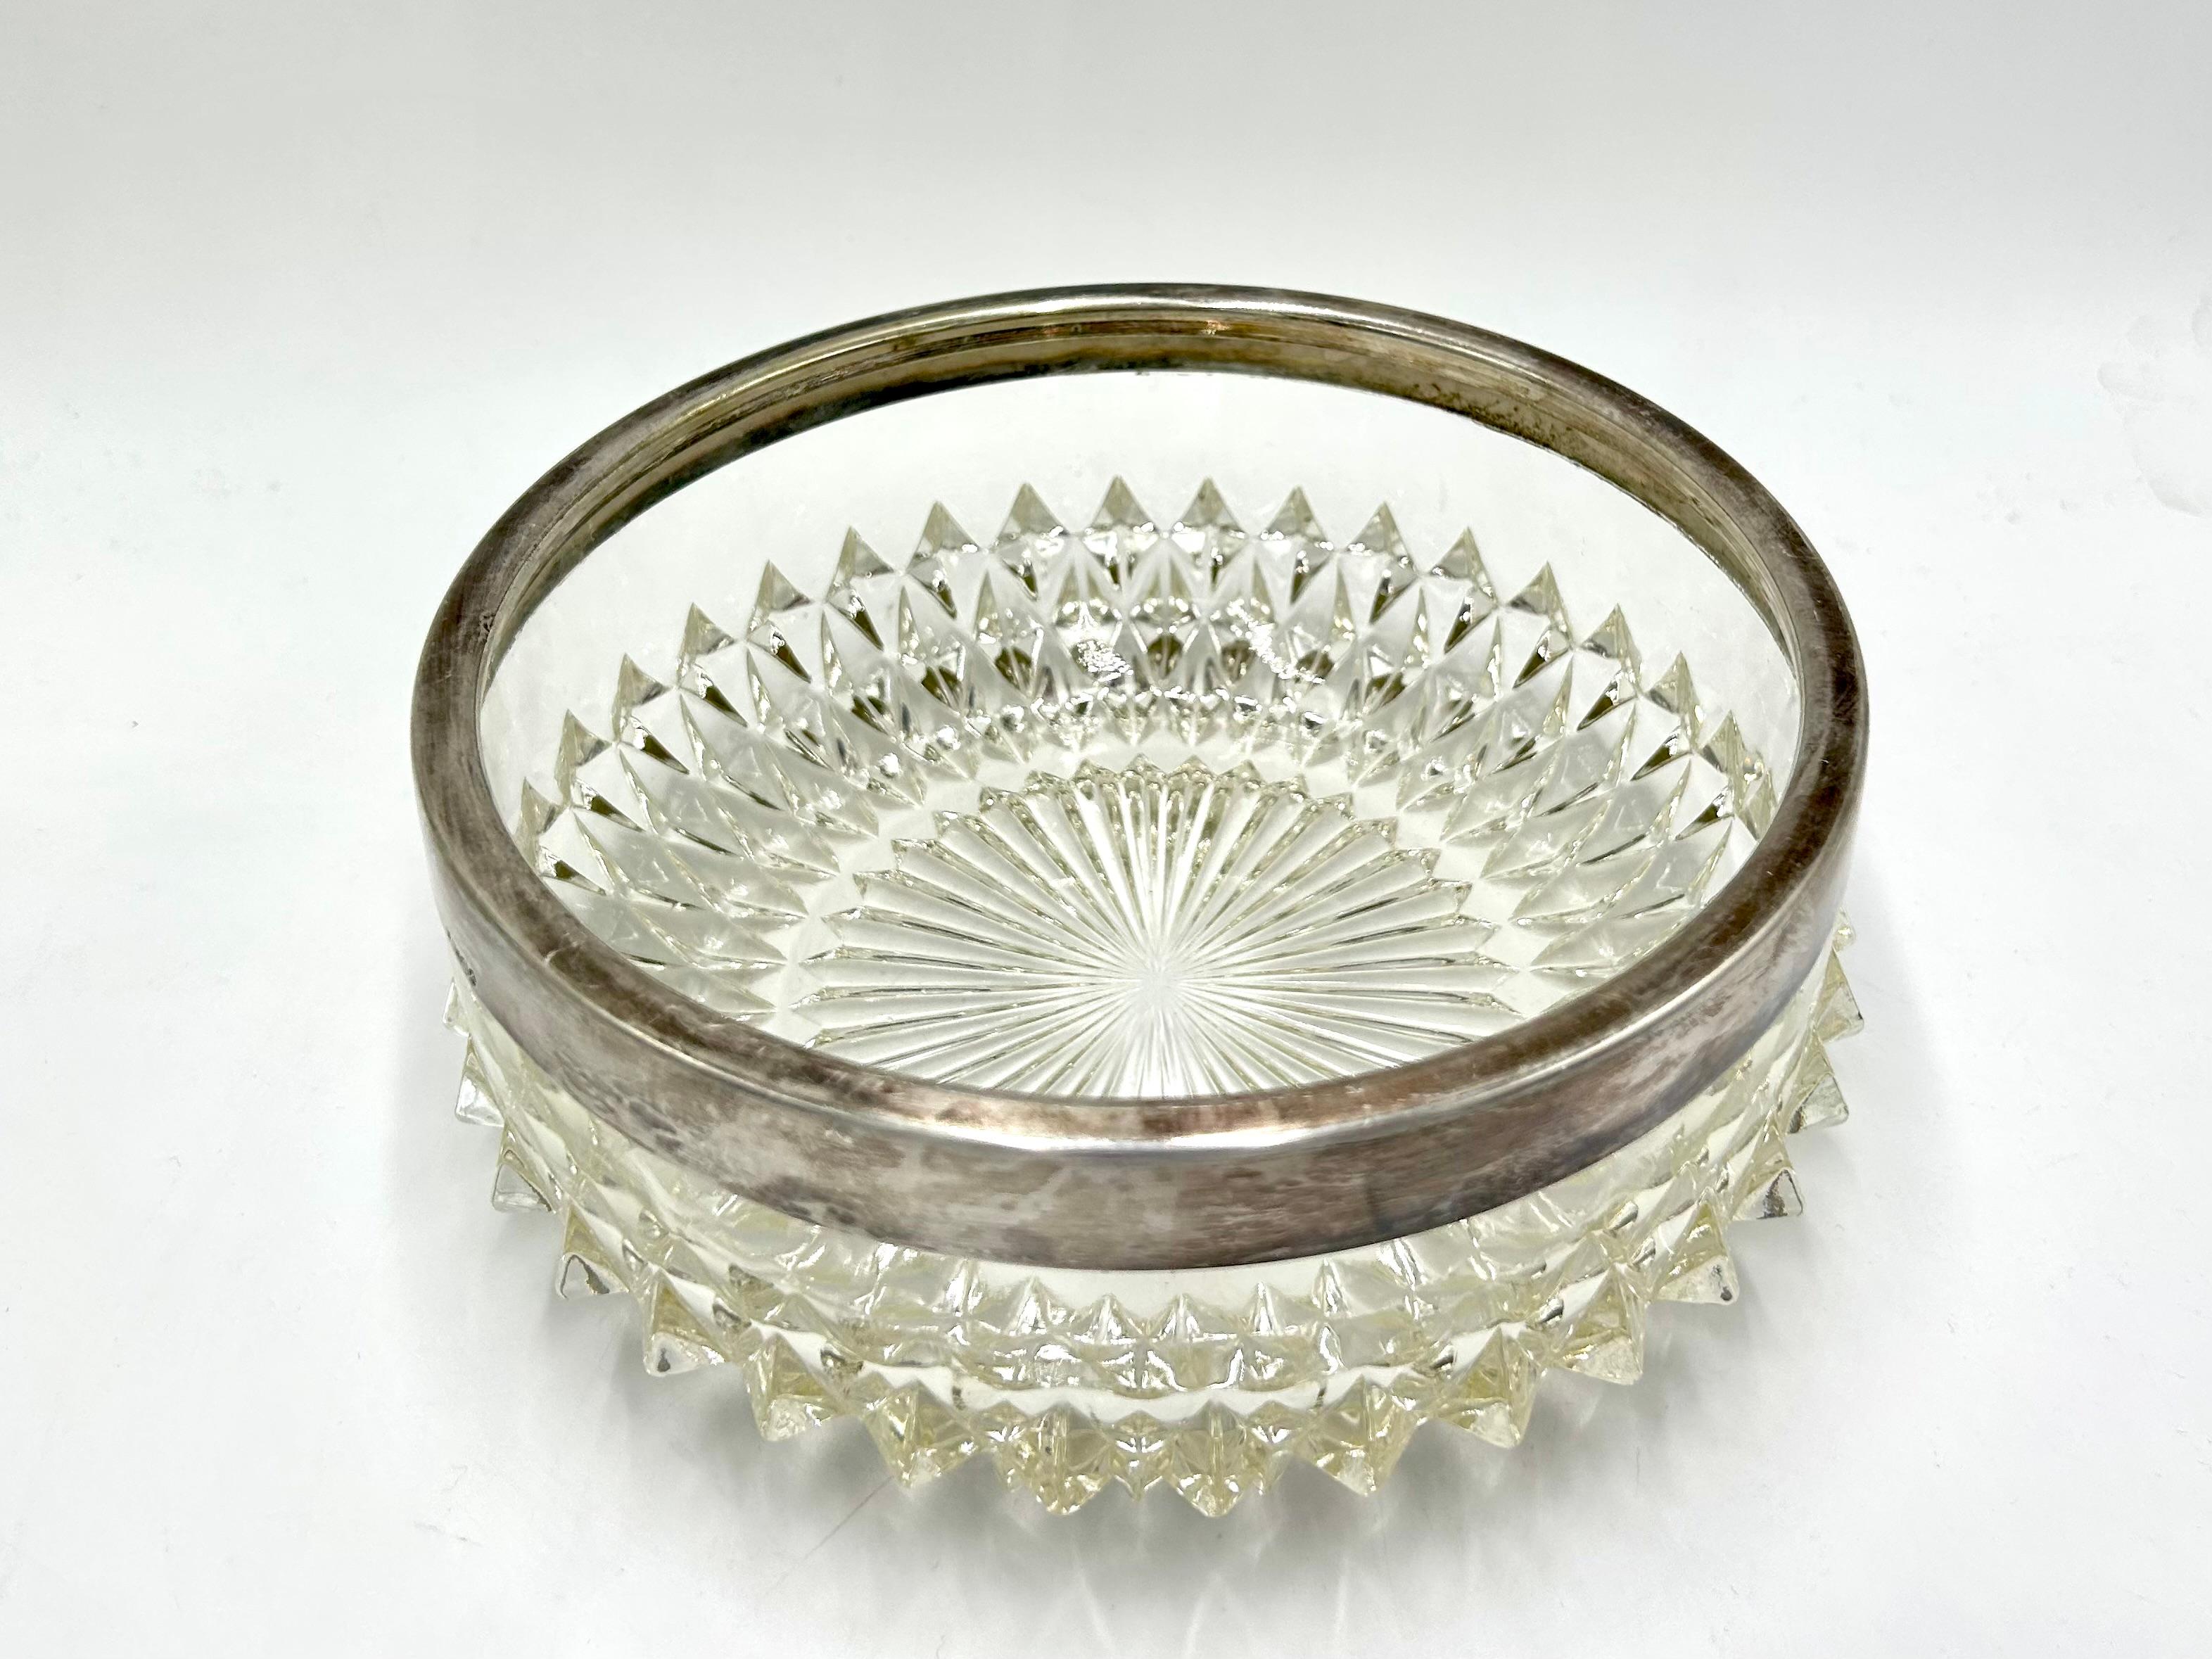 Eine Kristallschale für Süßigkeiten mit einem versilberten Ring

Sehr guter Zustand ohne Schäden

Höhe 8cm

Durchmesser 20cm